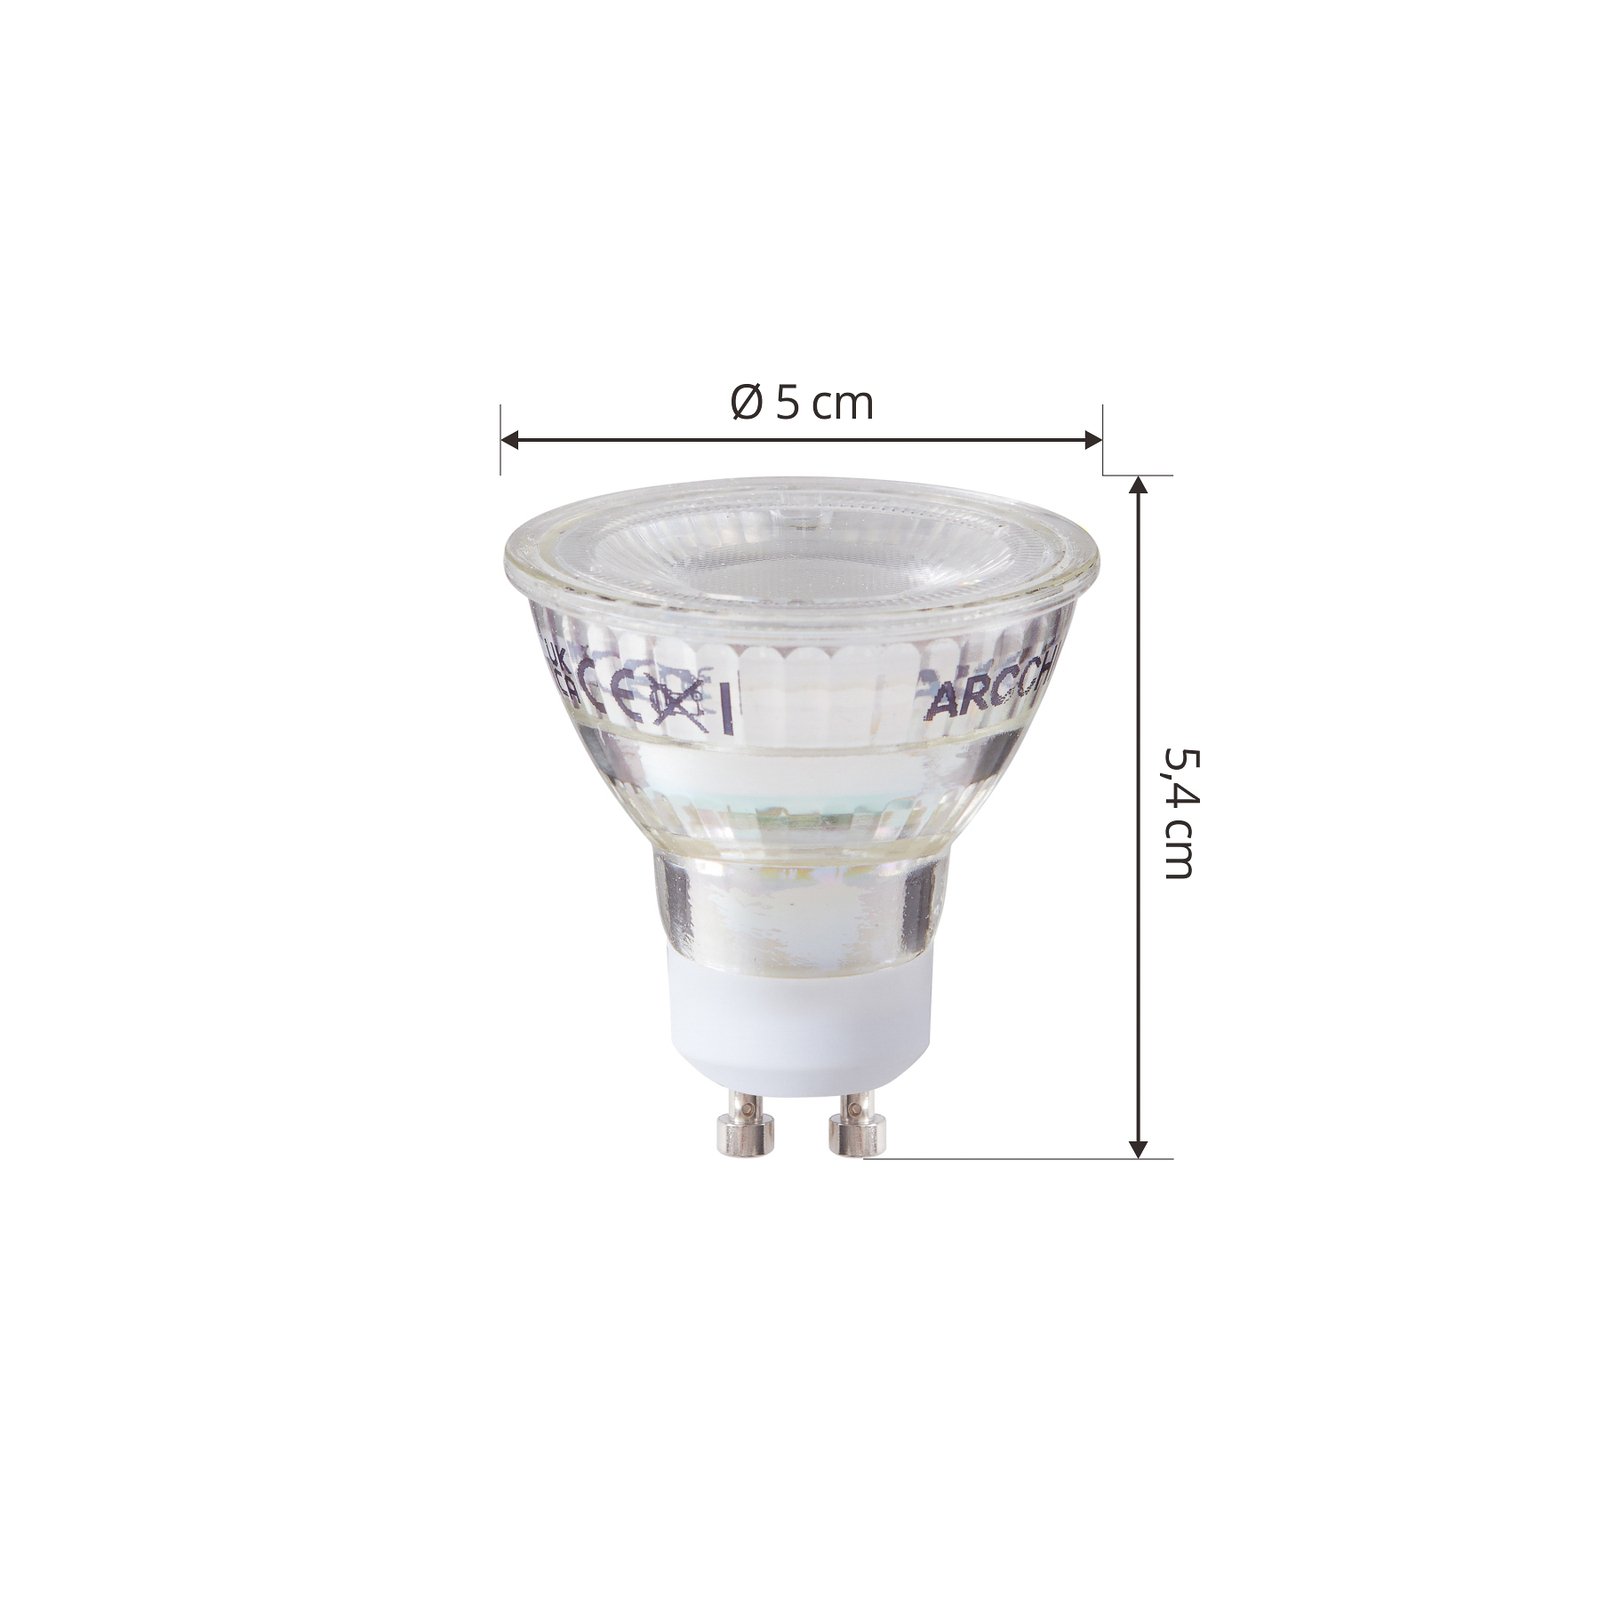 Arcchio LED-lampa GU10 2,5W 6500K 450lm glas set om 2